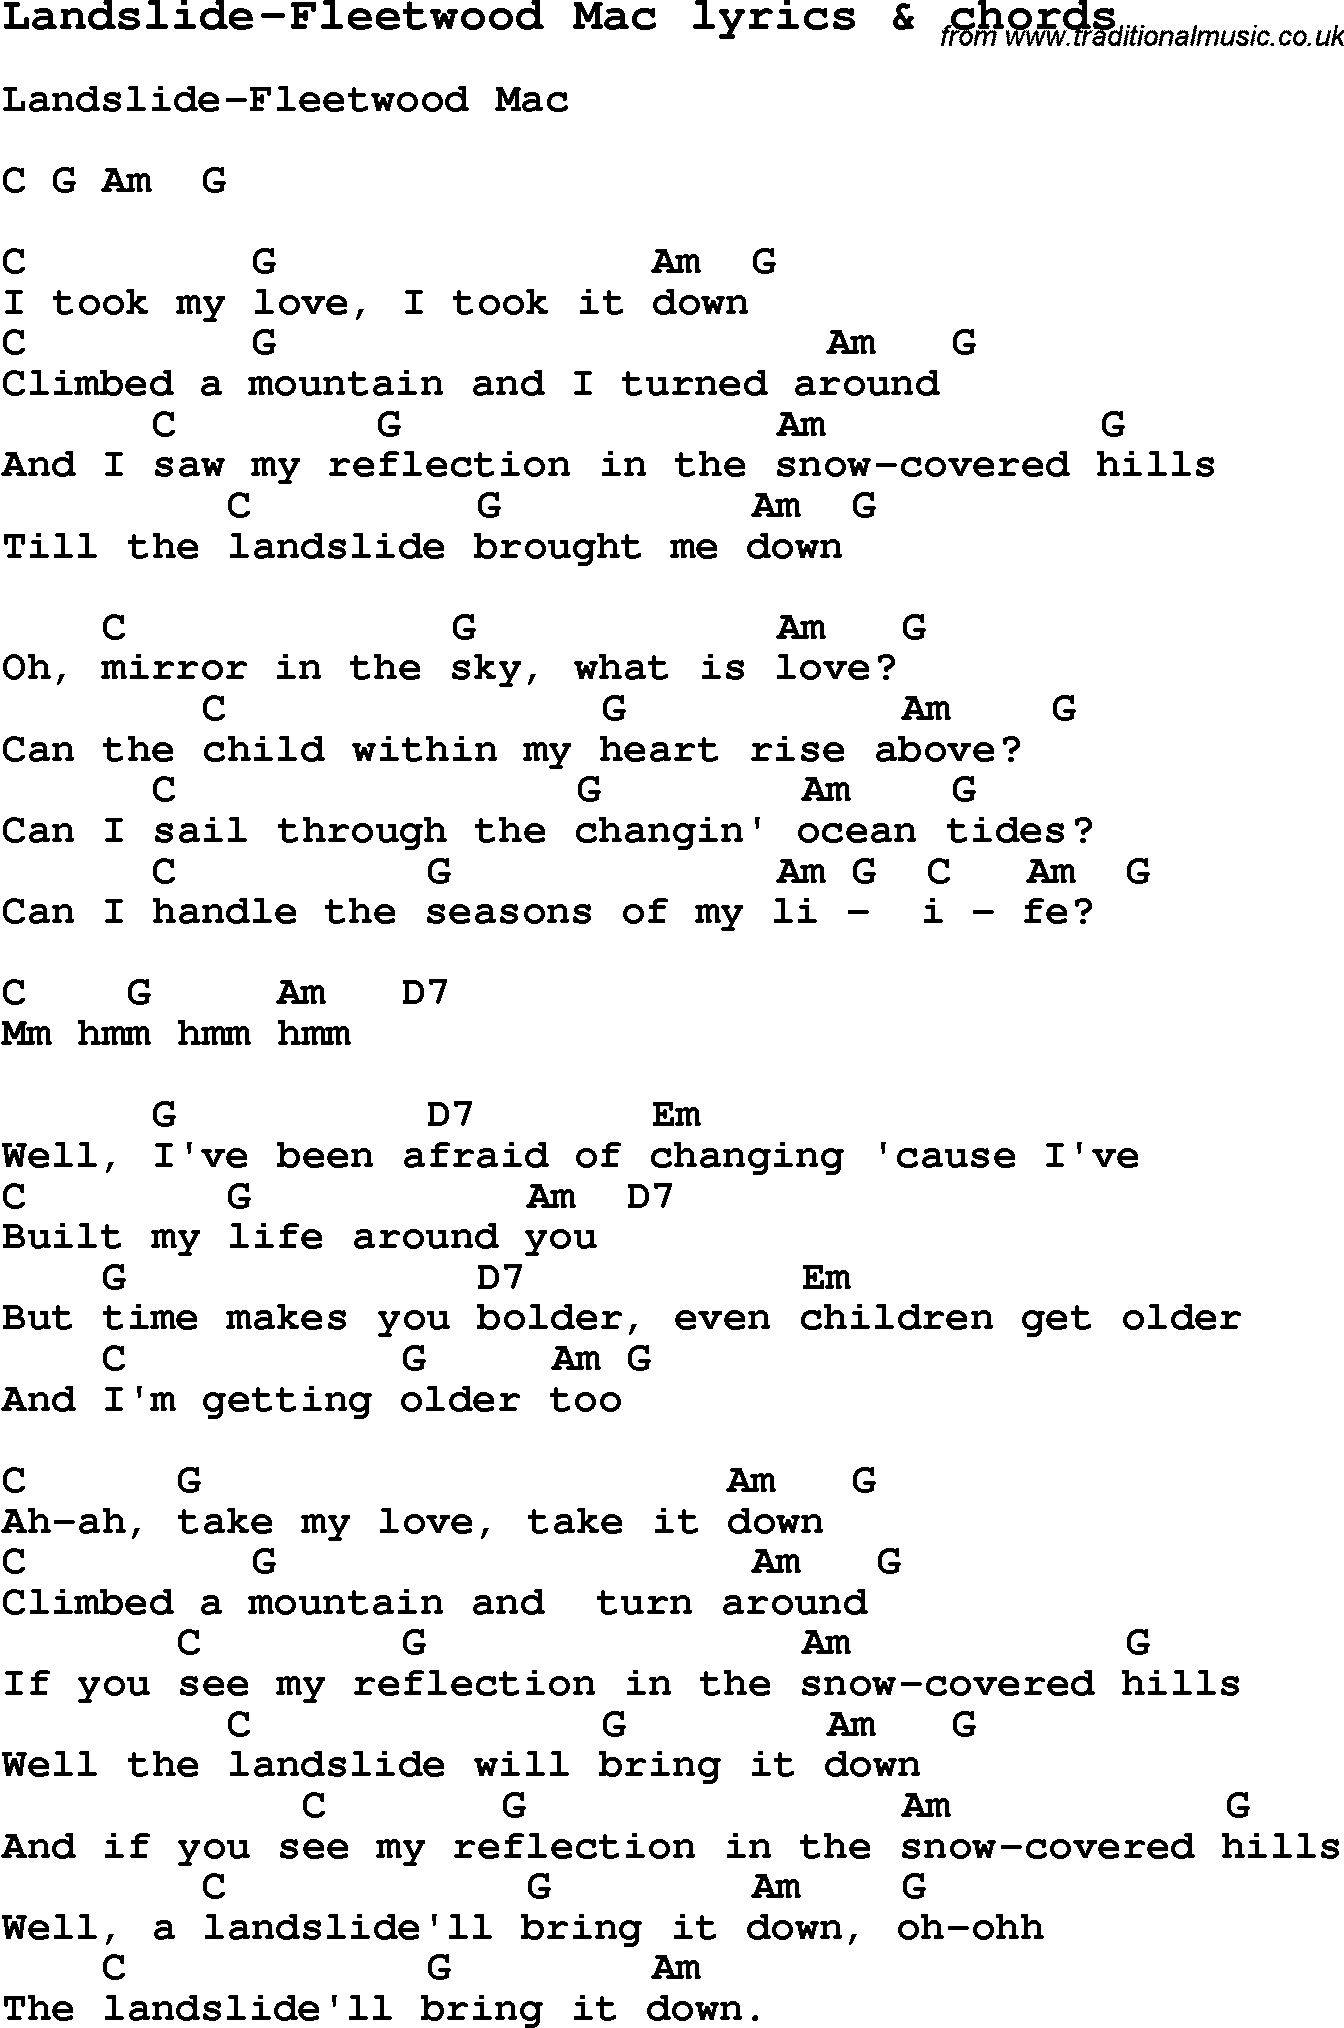 Love Song Lyrics for: Landslide-Fleetwood Mac with chords for Ukulele, Guitar Banjo etc.